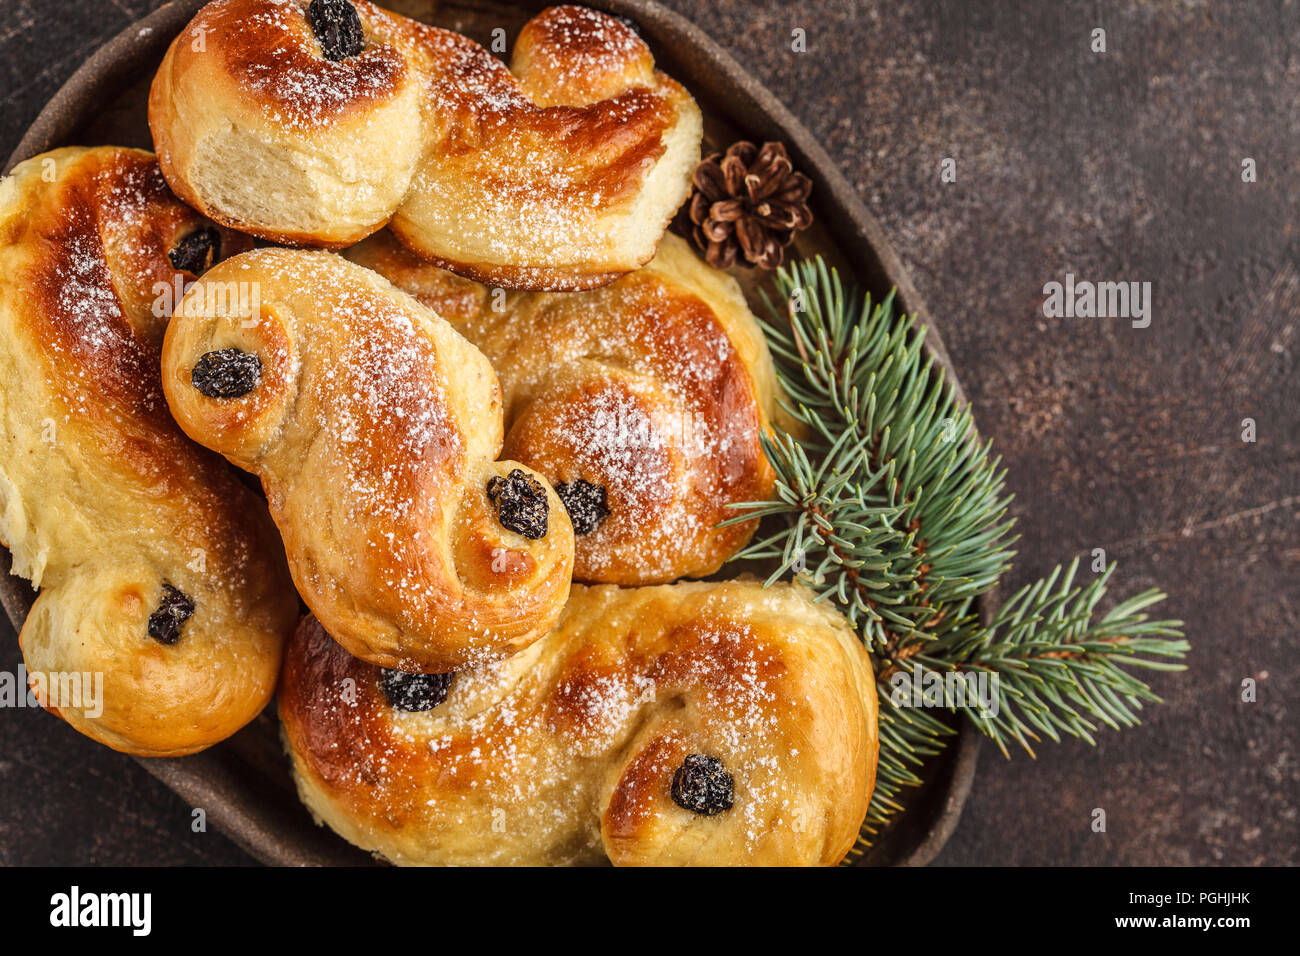 Noël suédois traditionnel (petits pains au safran ou lussebulle lussekatt). Noël suédois. Fond sombre, décoration de Noël. Banque D'Images